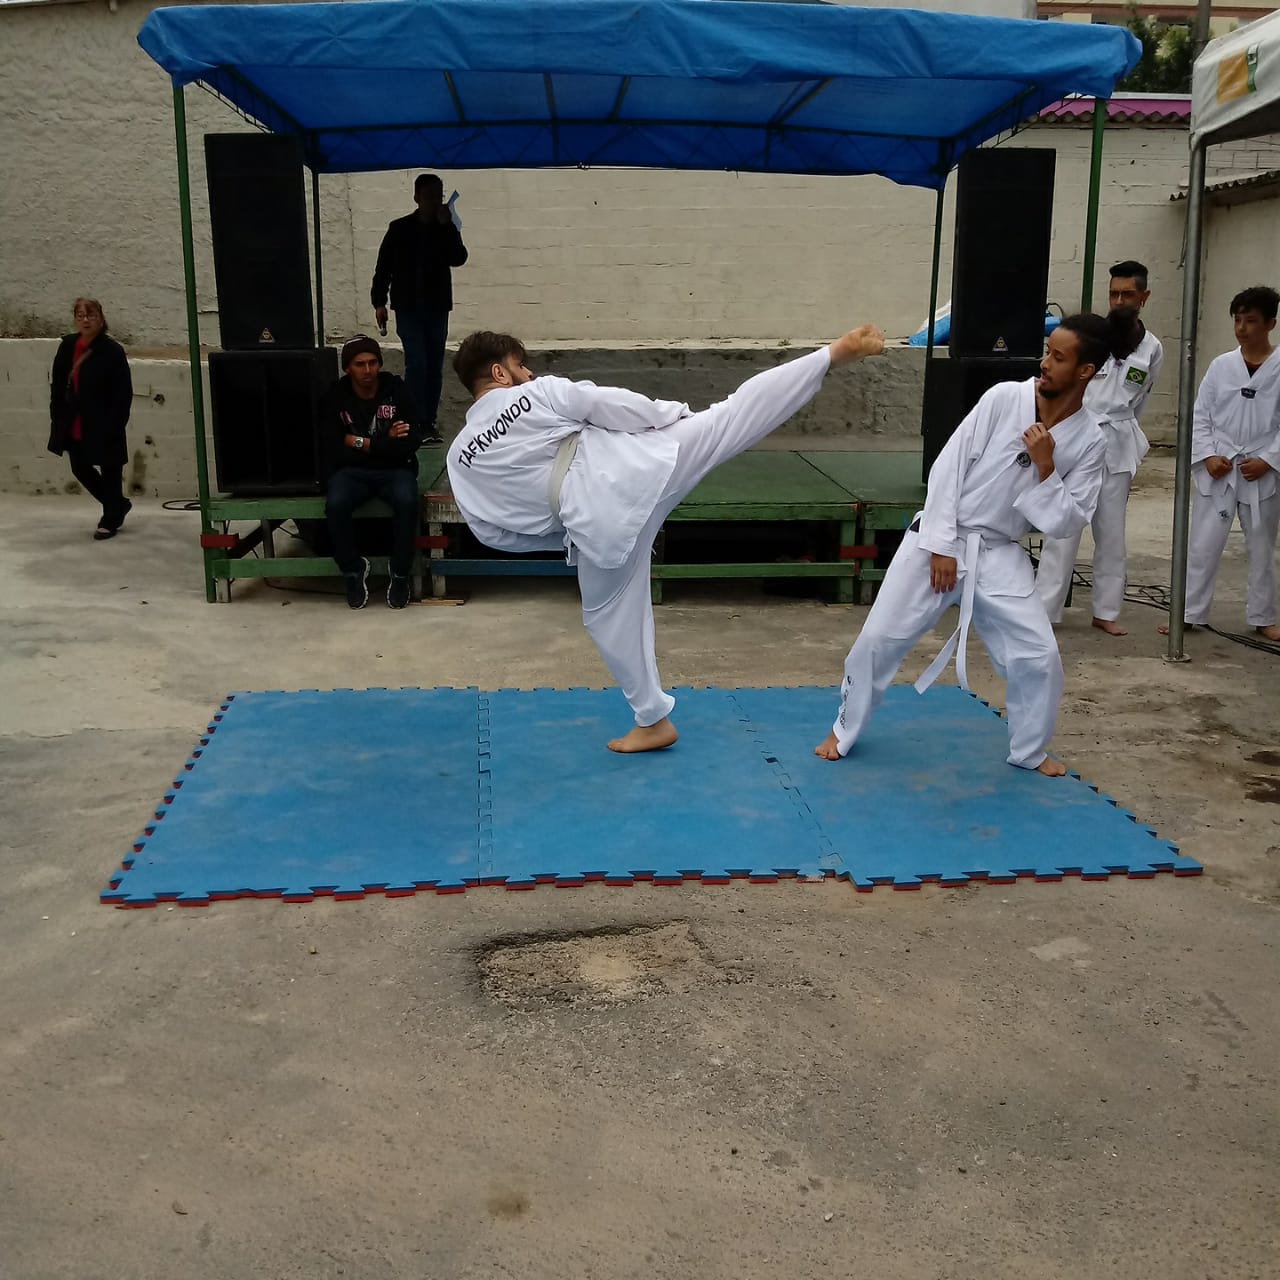 Rapaz dá golpe de taekwondo em apresentação.